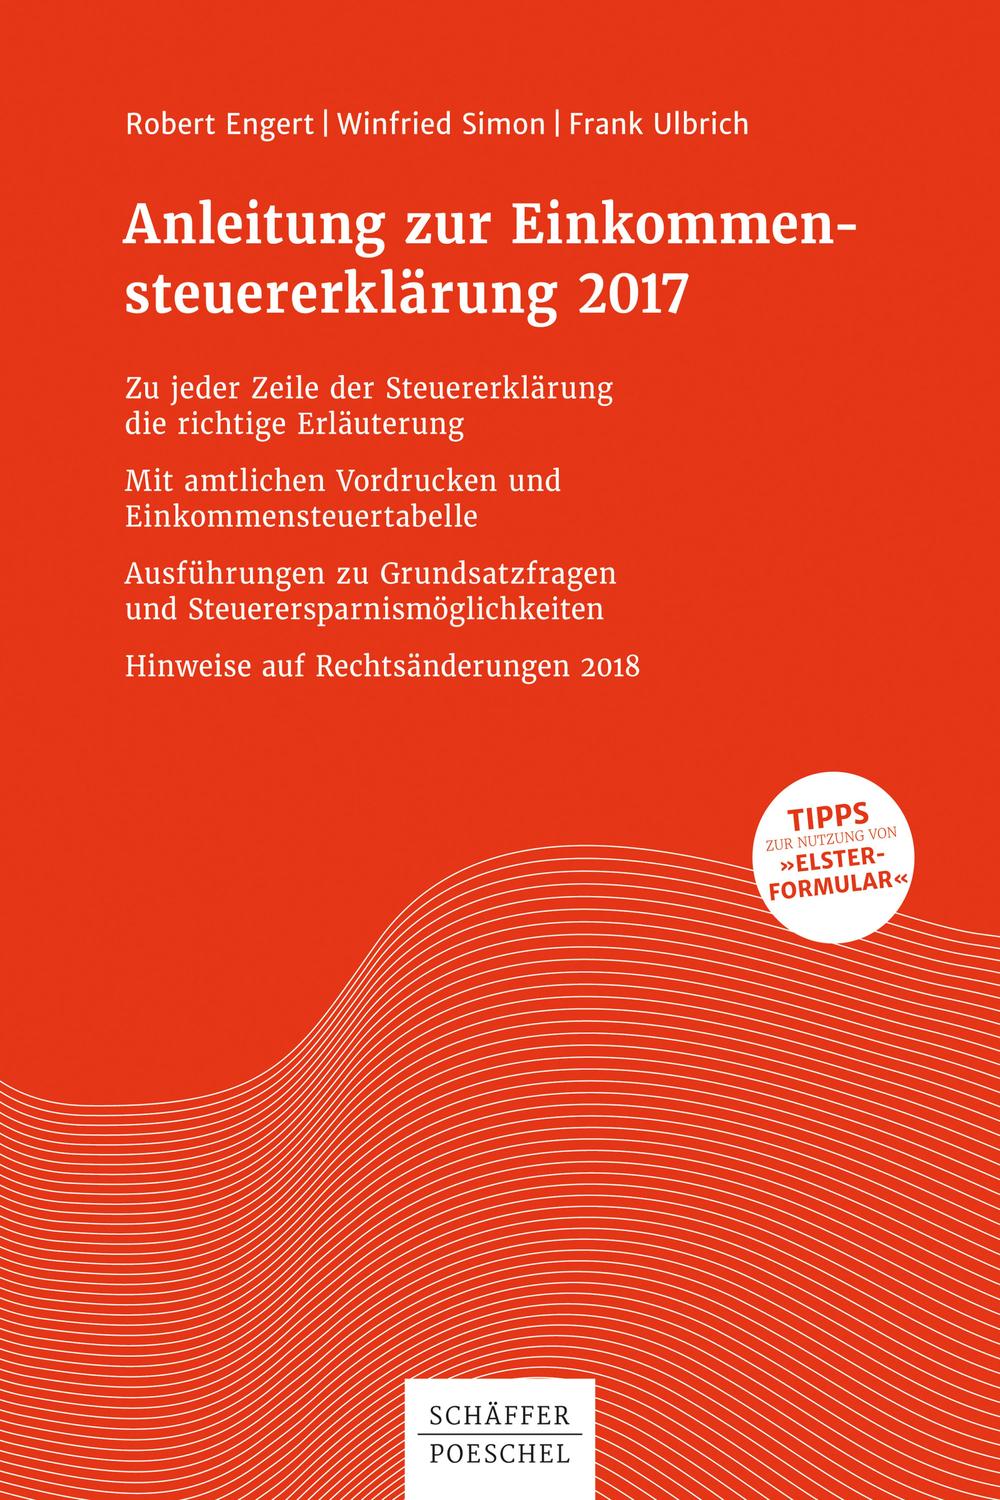 Anleitung zur Einkommensteuererklärung 2017 - Robert Engert, Winfried Simon, Frank Ulbrich